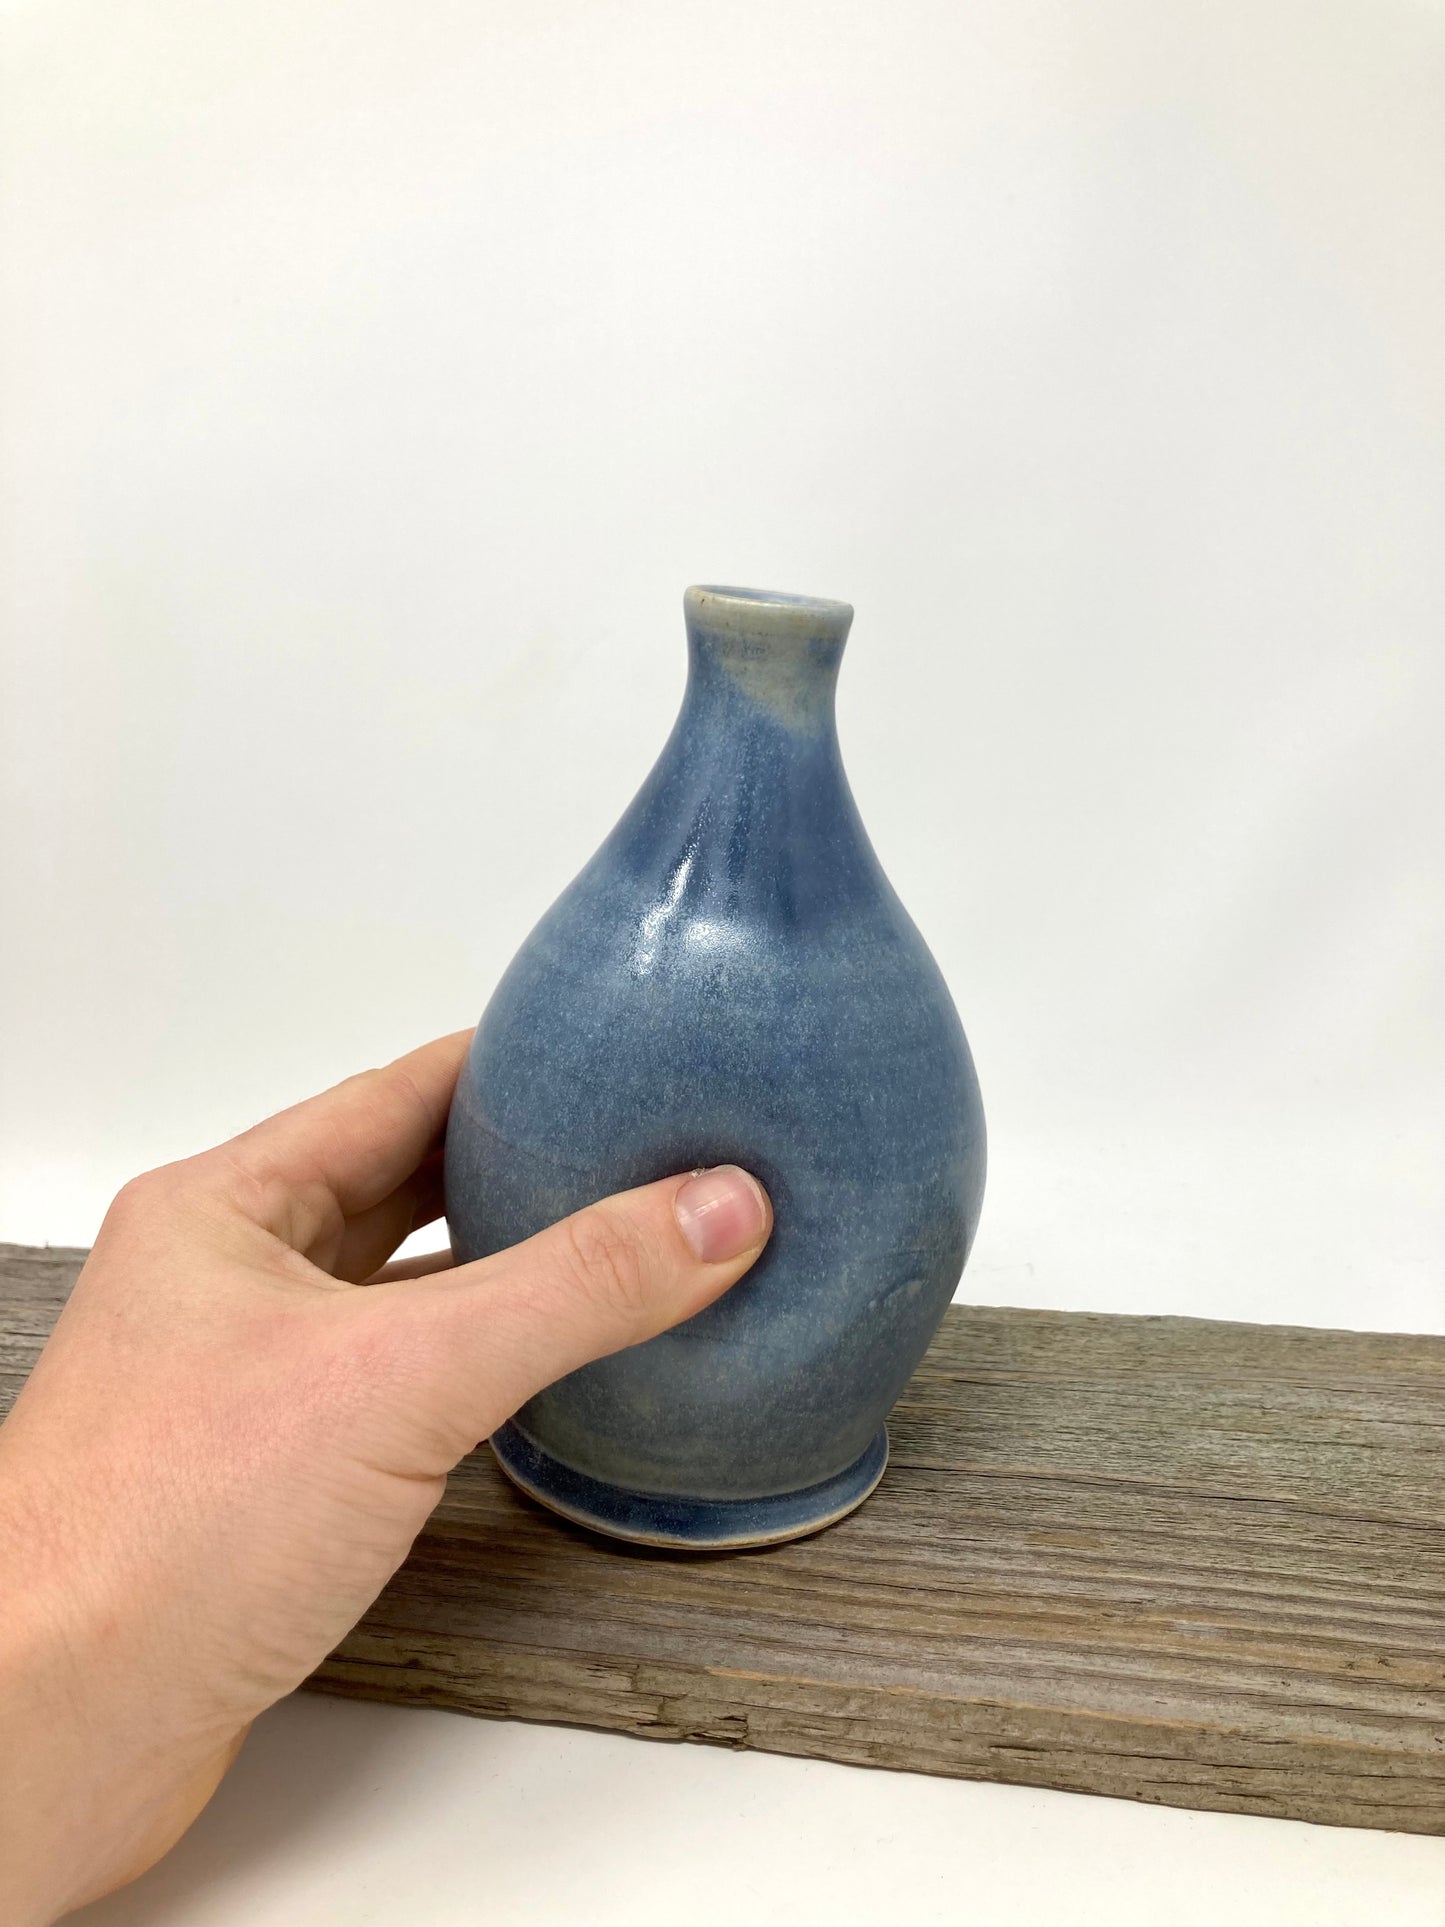 Dimpled Bottle Vase in Blue-Bronze glaze